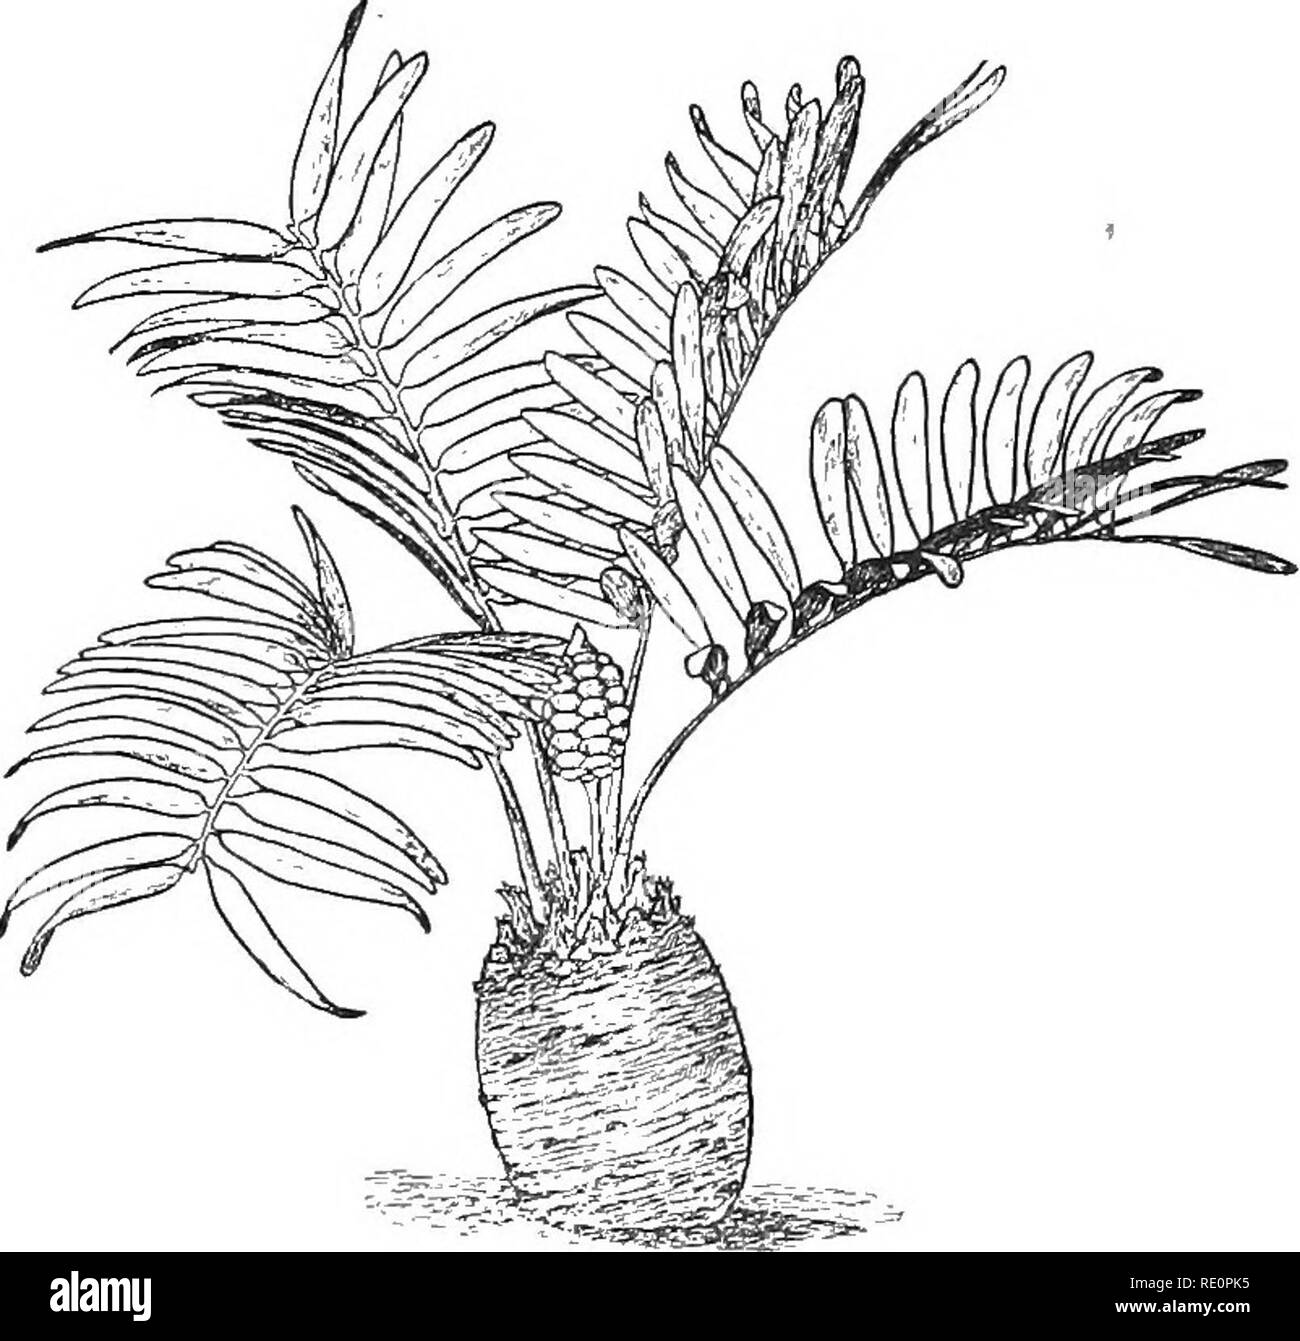 . La nature et le développement des plantes. La botanique. Les CYCADALES palm 354 décidément de l'apparence d'une, avec des tiges de 12 à 60 pieds de haut. Les faisceaux vasculaires sont collatéraux et disposés autour d'un grand caractère véritable tel qu'indiqué dans Botrychium. Un léger élargissement de la tige est provoquée en raison de la faible croissance du cambium de ces ensembles, mais dans certains genres, la principale augmentation s'effectue par la formation de nouvelles offres packagées en dehors de ces premiers formé. Types de paquets de fougère se produisent également dans les feuilles, cortex et fleurs de certaines espèces. Les feuilles sont grandes et leathery et forme une rosette, alterna Banque D'Images